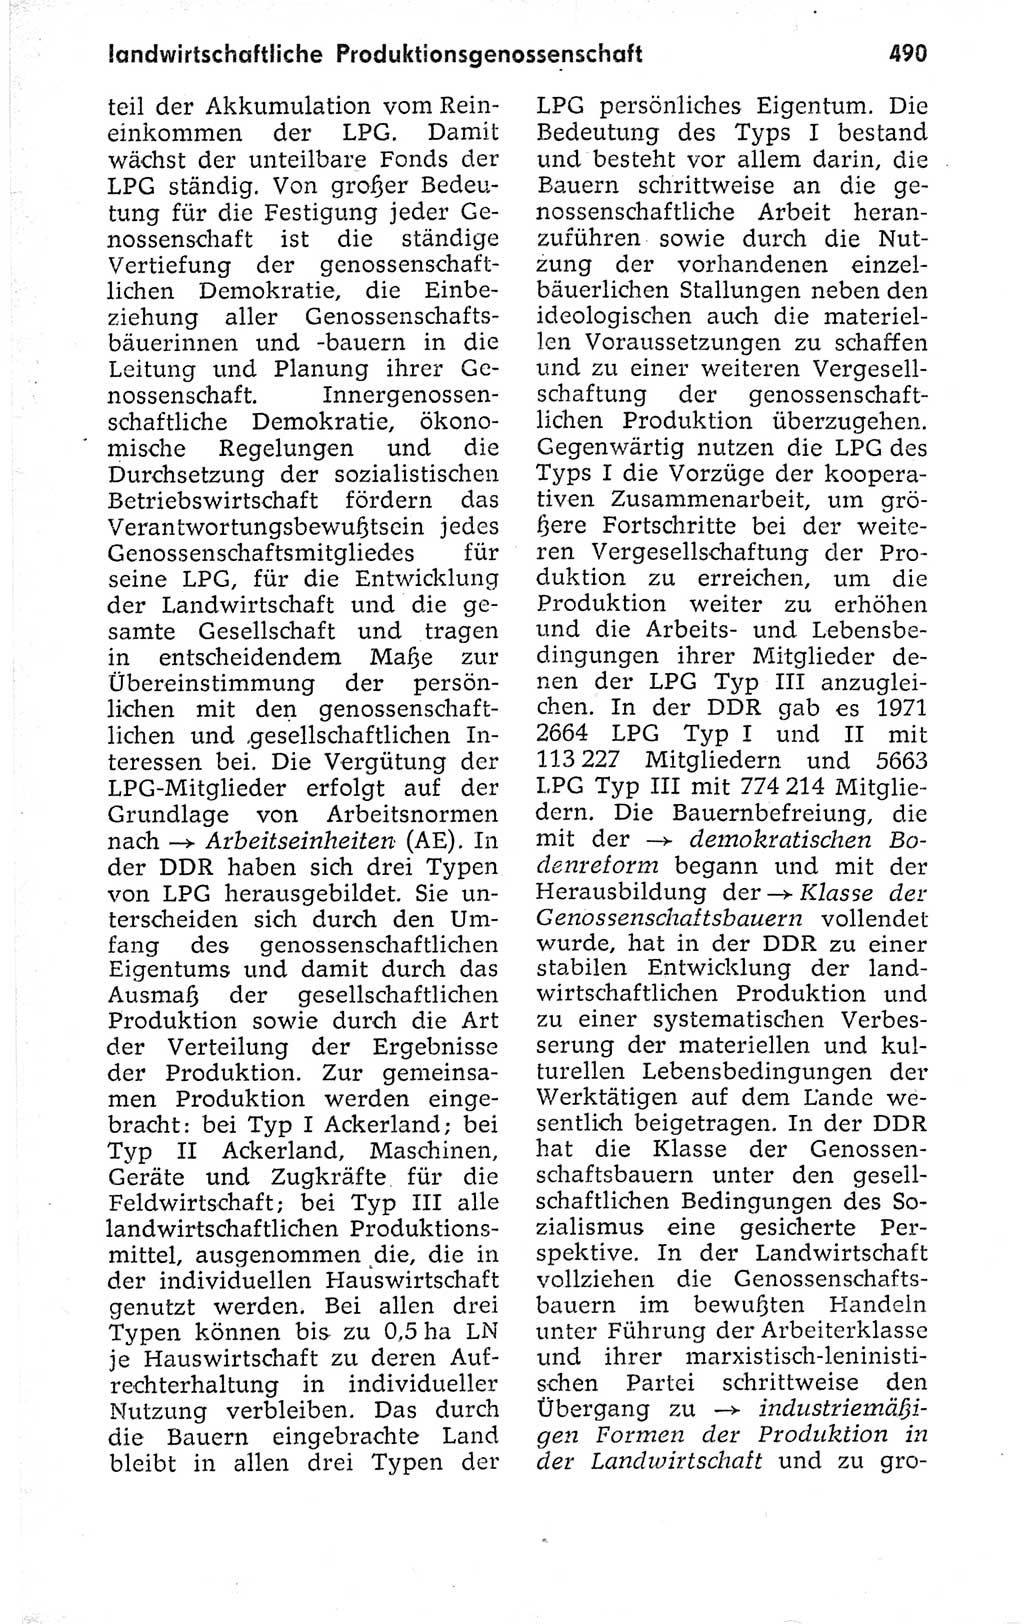 Kleines politisches Wörterbuch [Deutsche Demokratische Republik (DDR)] 1973, Seite 490 (Kl. pol. Wb. DDR 1973, S. 490)